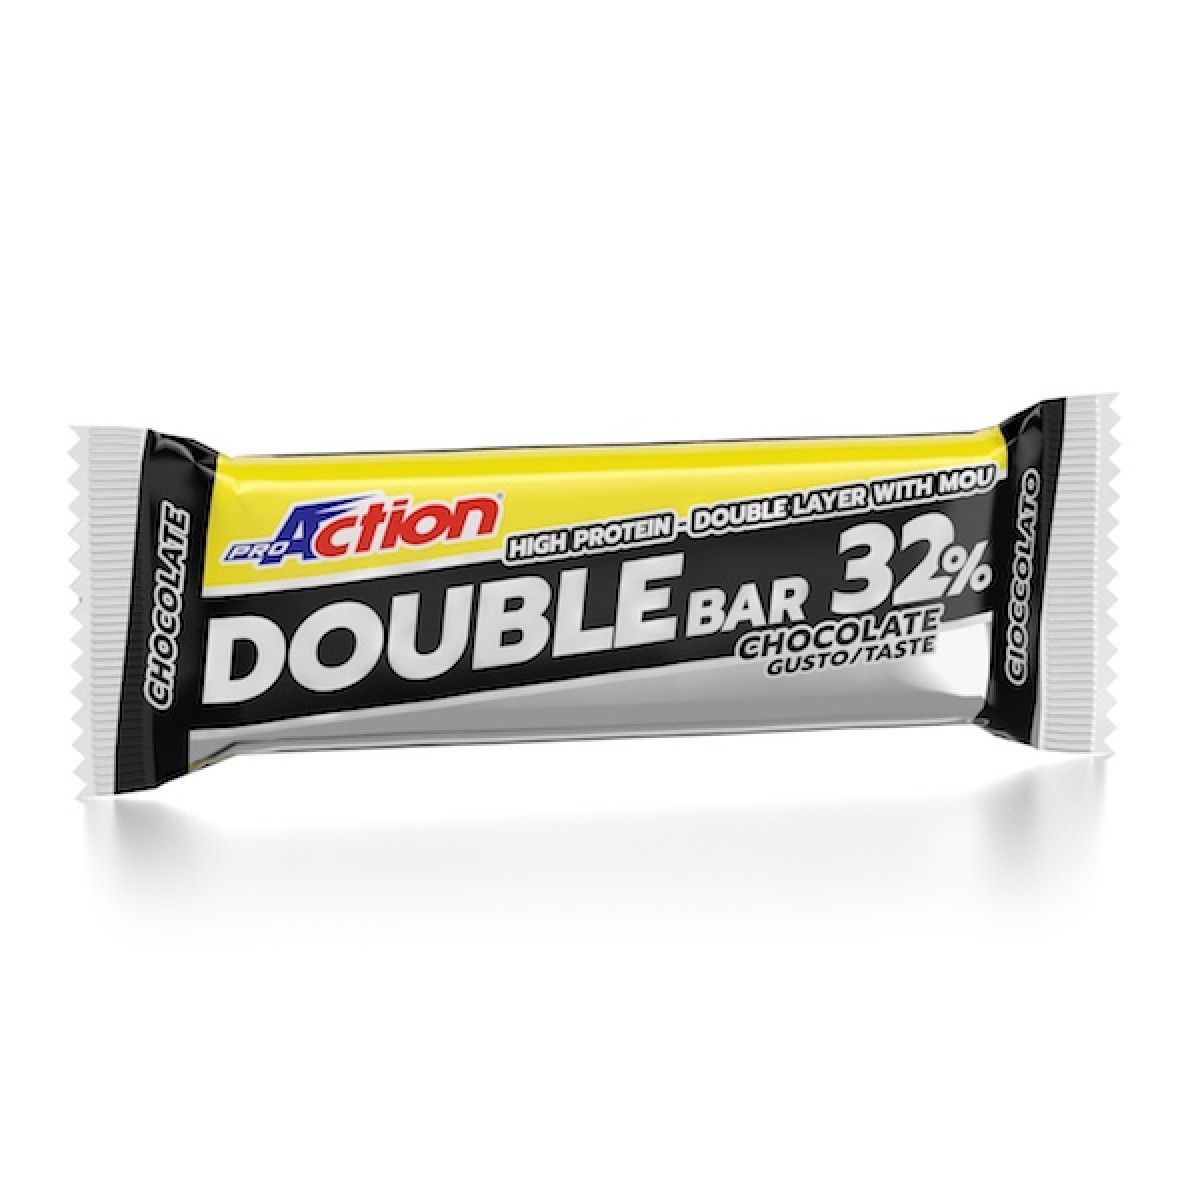 Image of Double Bar 32% Cioccolato/Caramello Proaction 60g